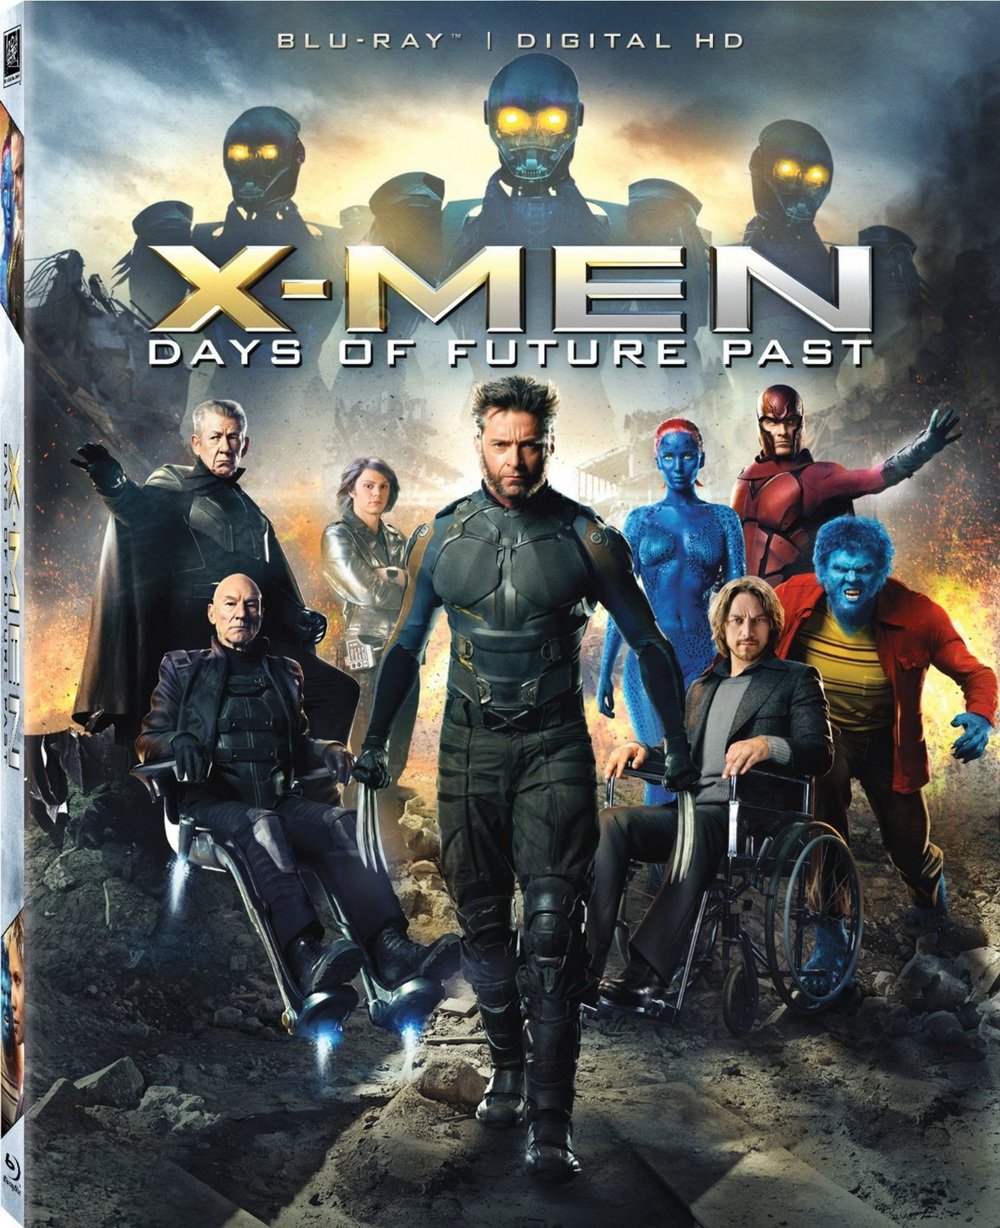 [X战警·逆转未来].X-Men.Days.of.Future.Past.2014.3D.BluRay.1080p.AVC.DTS-HD.MA.7.1-Dolala@CHDBits    47.59G-4.jpg